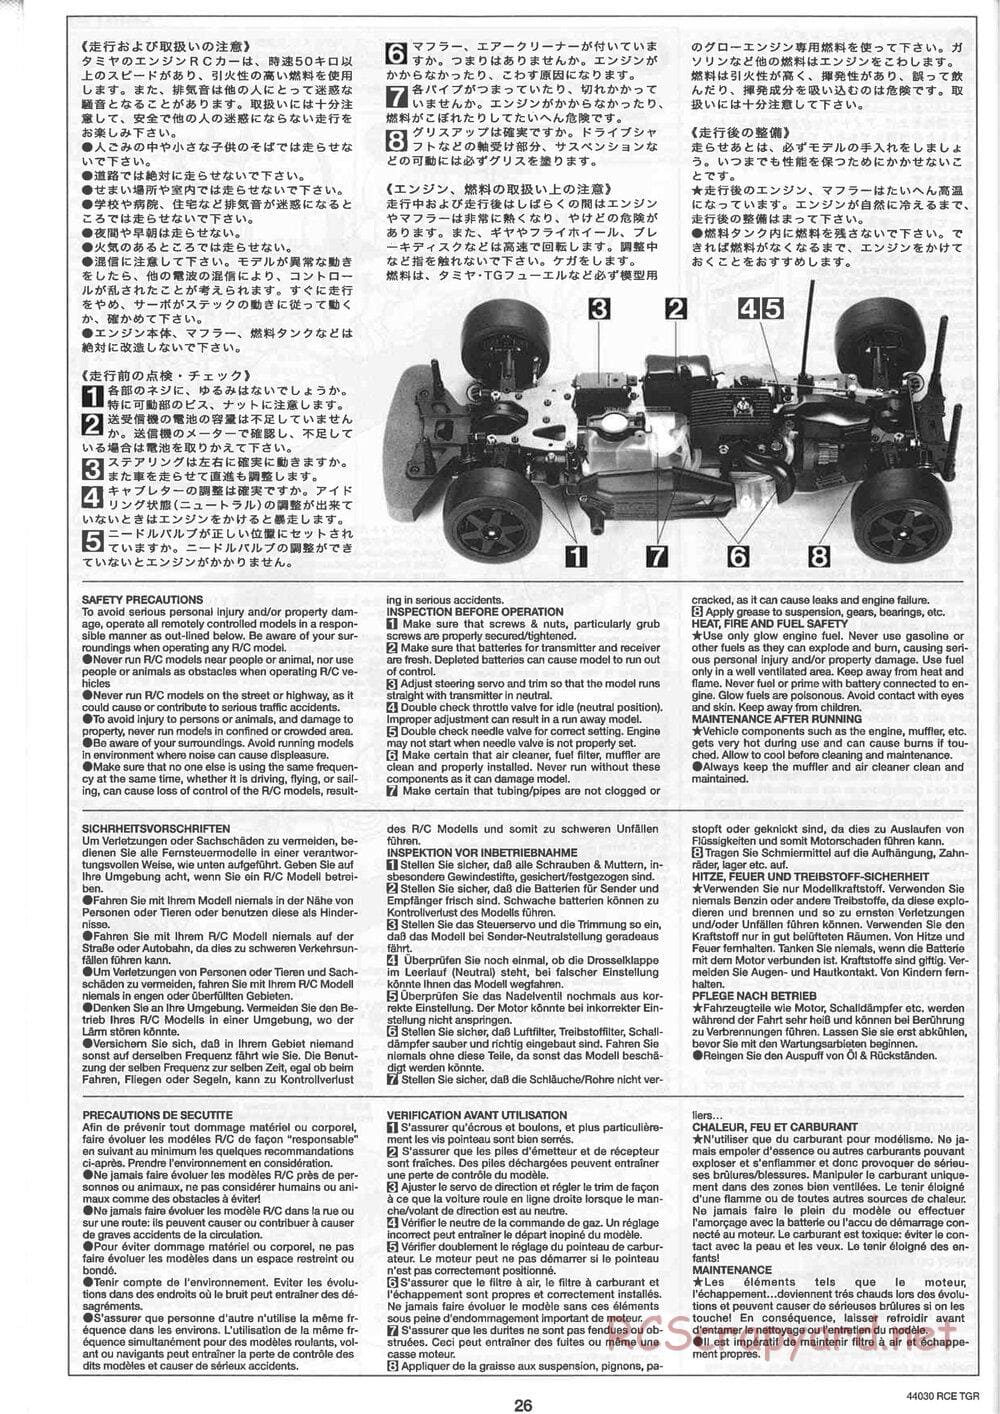 Tamiya - TGR Chassis - Manual - Page 26